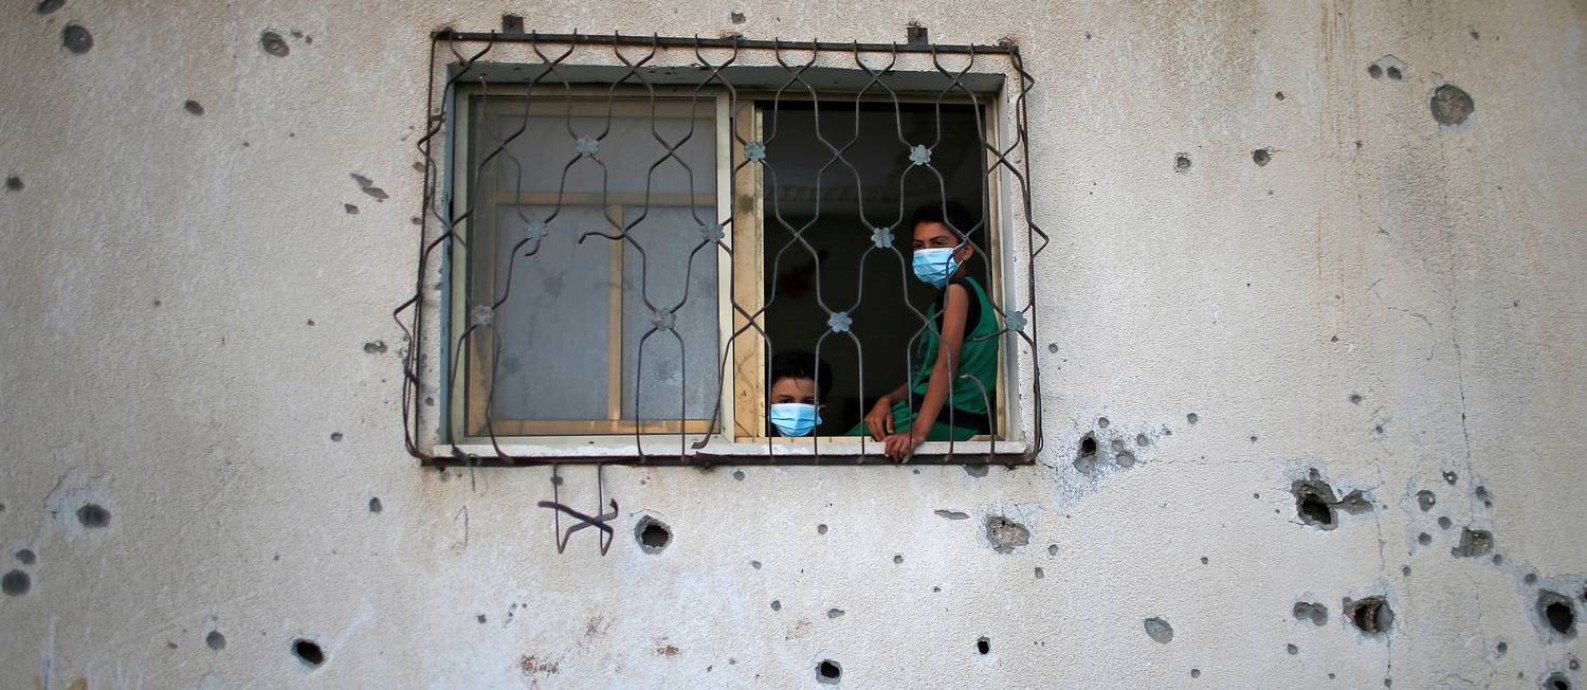 Crianças palestinas dentro de uma casa alvejada na Faixa de Gaza durante a pandemia da Covid-19 Foto: Suhaib Salem / Reuters